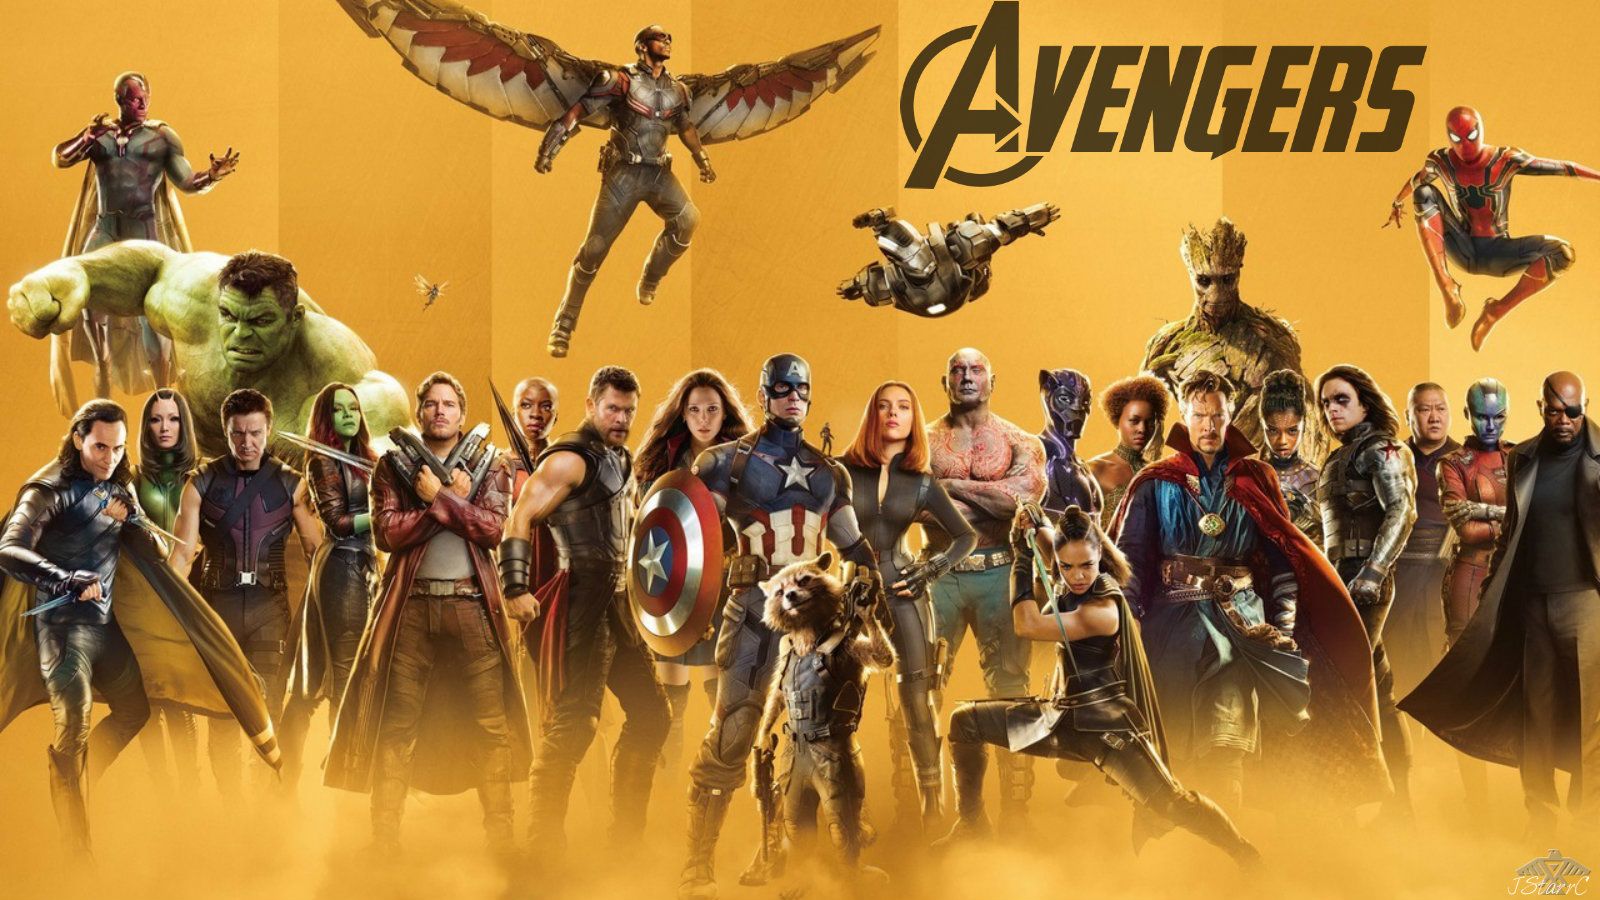 Avengers: Endgame (2019): Infinity War 1 & 2 wallpaper